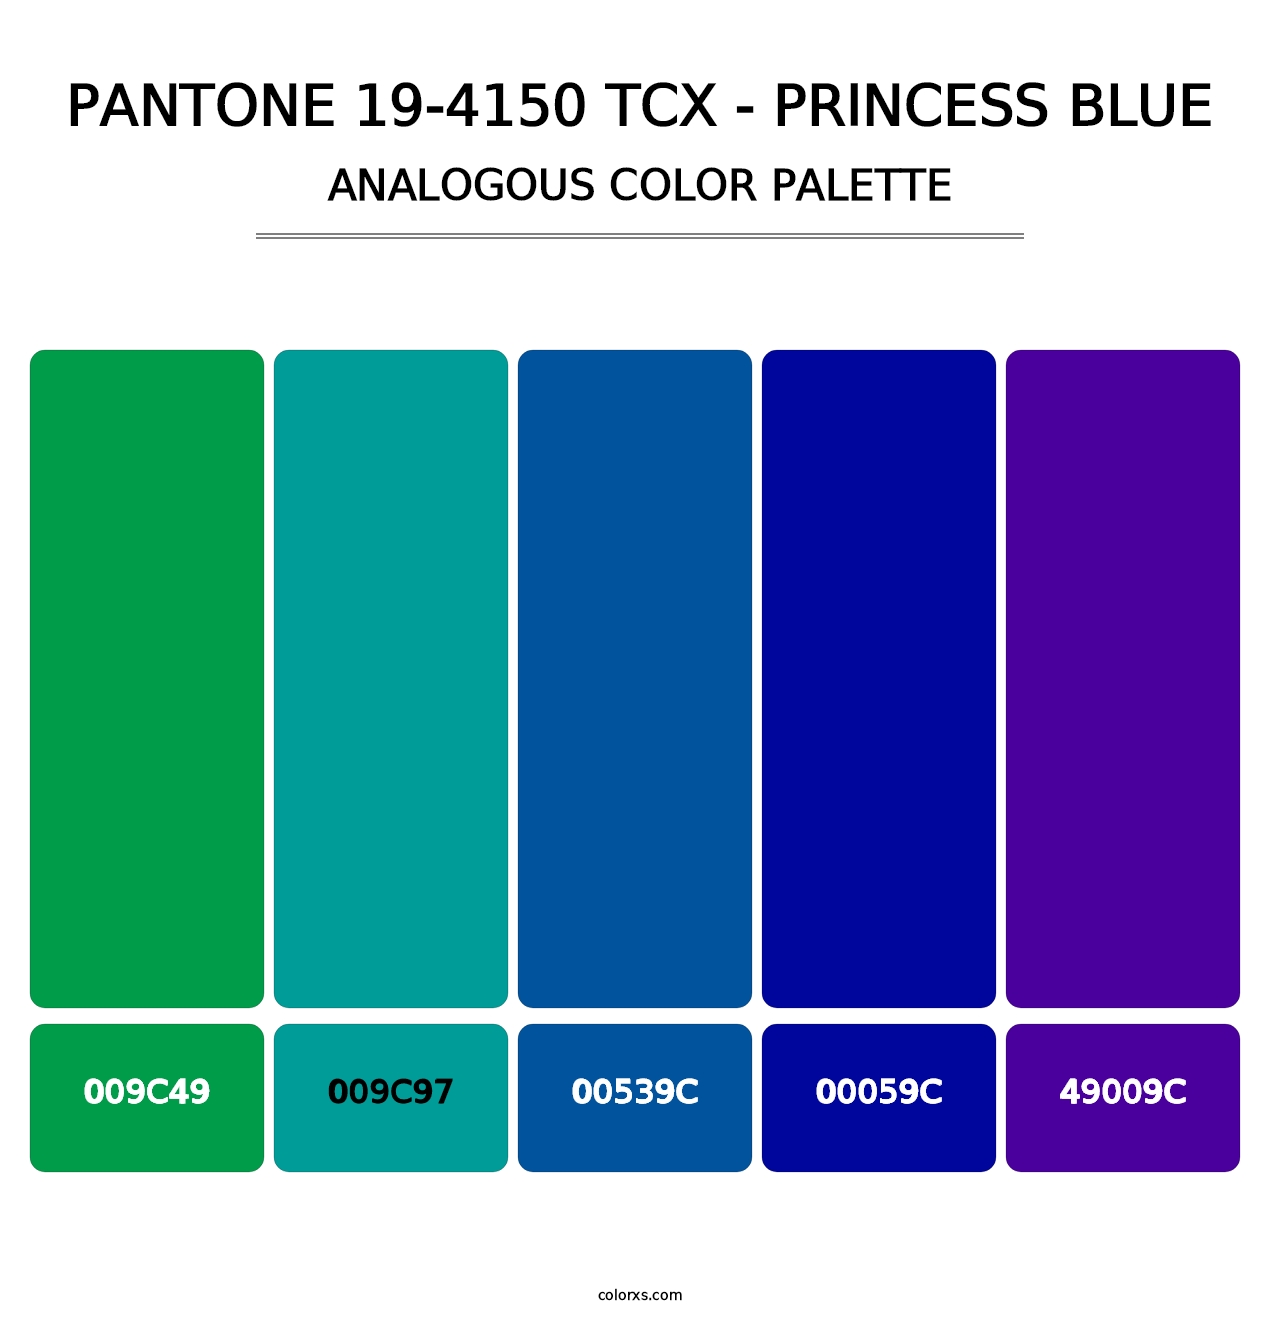 PANTONE 19-4150 TCX - Princess Blue - Analogous Color Palette